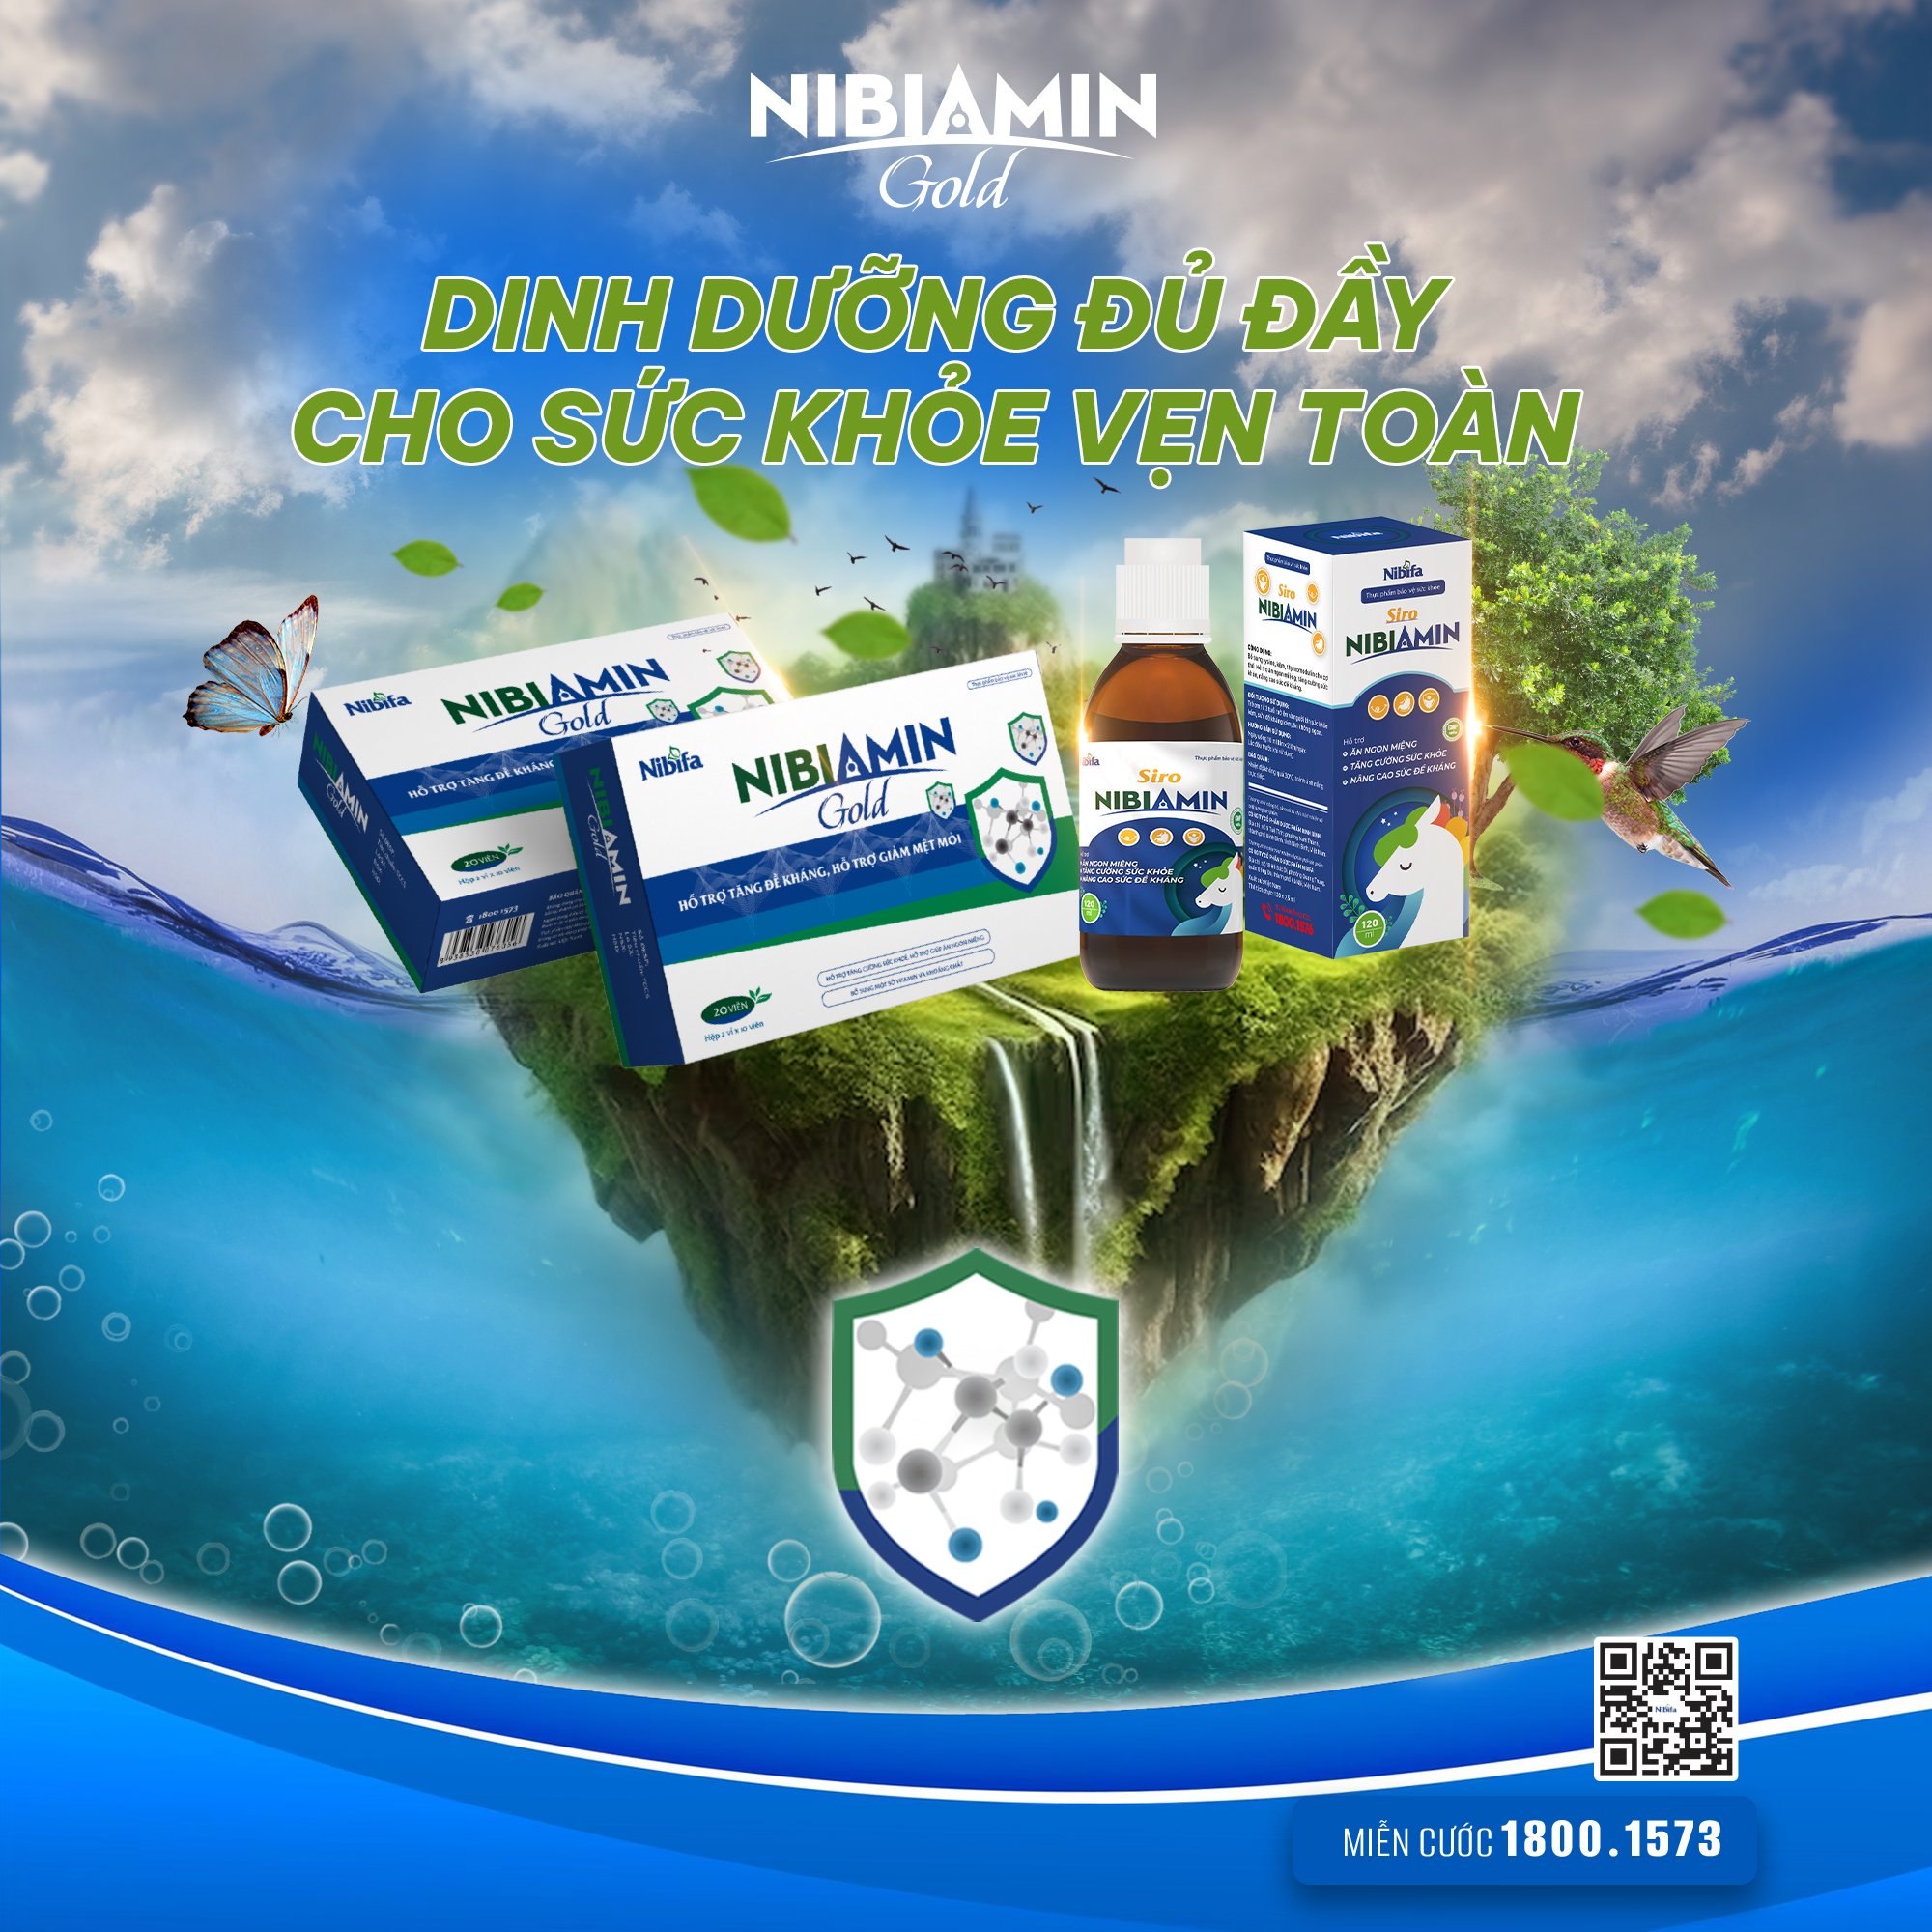 NibiAmin - Tăng sức khoẻ toàn diện